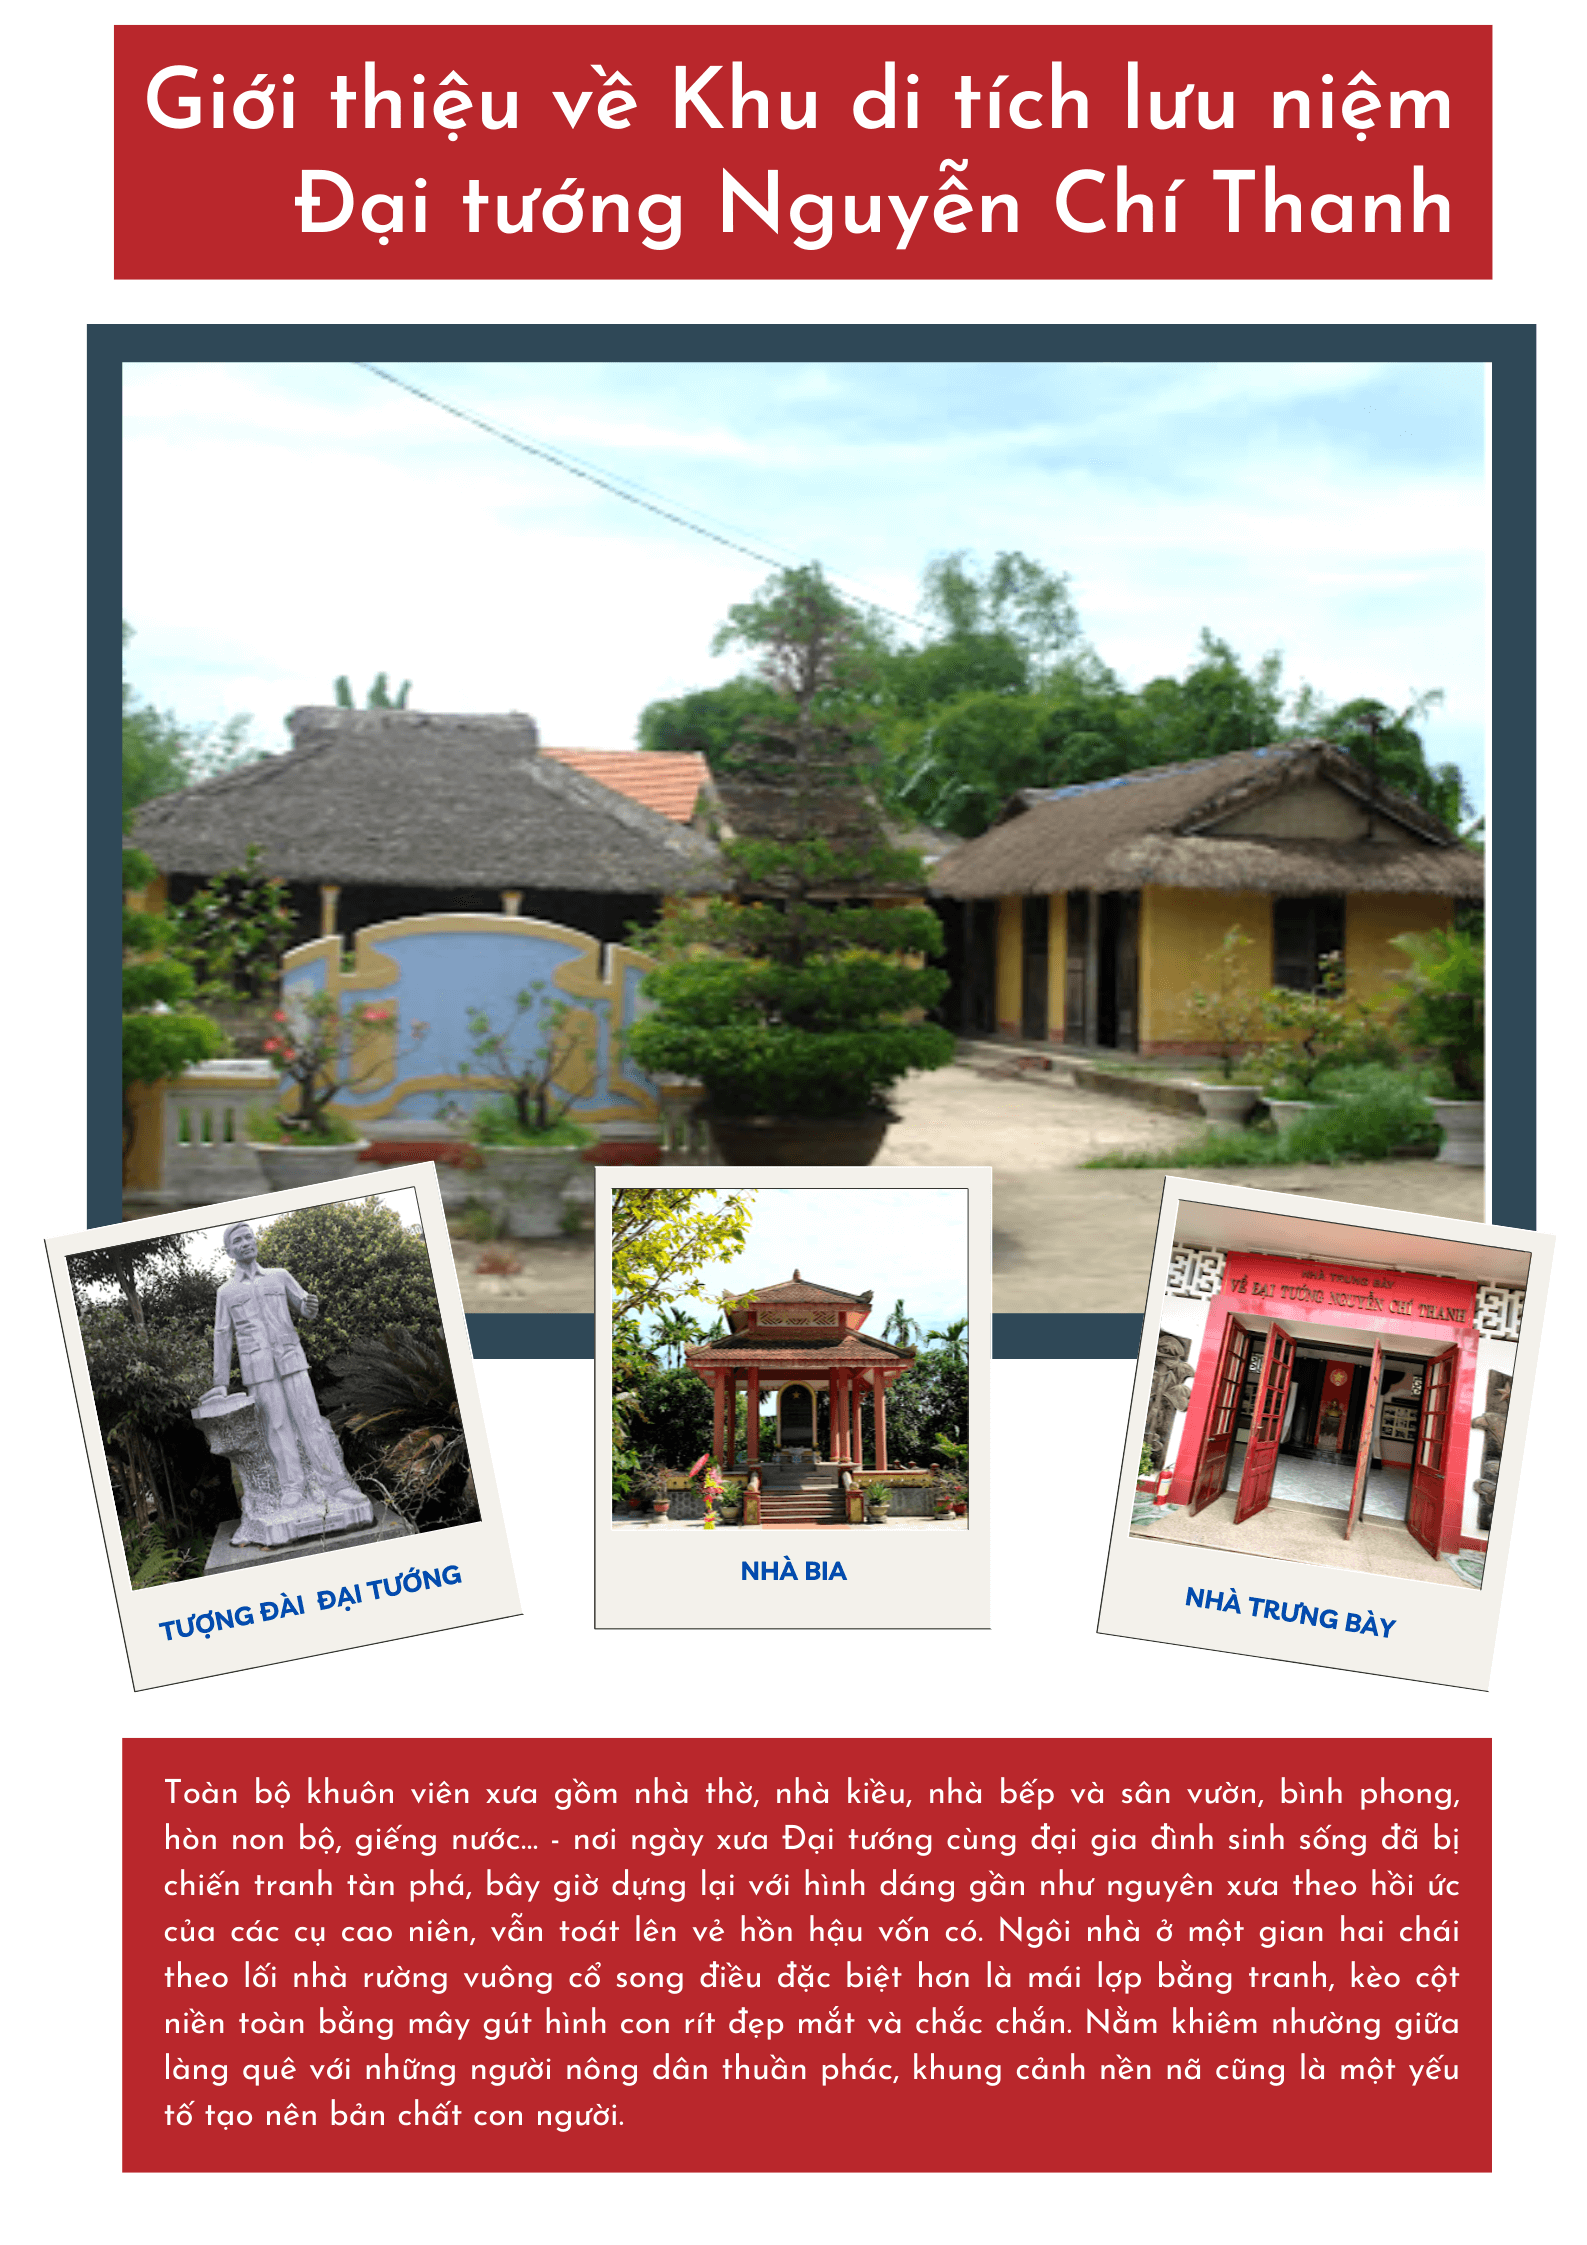 Di tích Khu lưu niệm Đại tướng Nguyễn Chí Thanh ở tại thôn Niêm Phò, xã Quảng Thọ, huyện Quảng Điền, tỉnh Thừa Thiên Huế